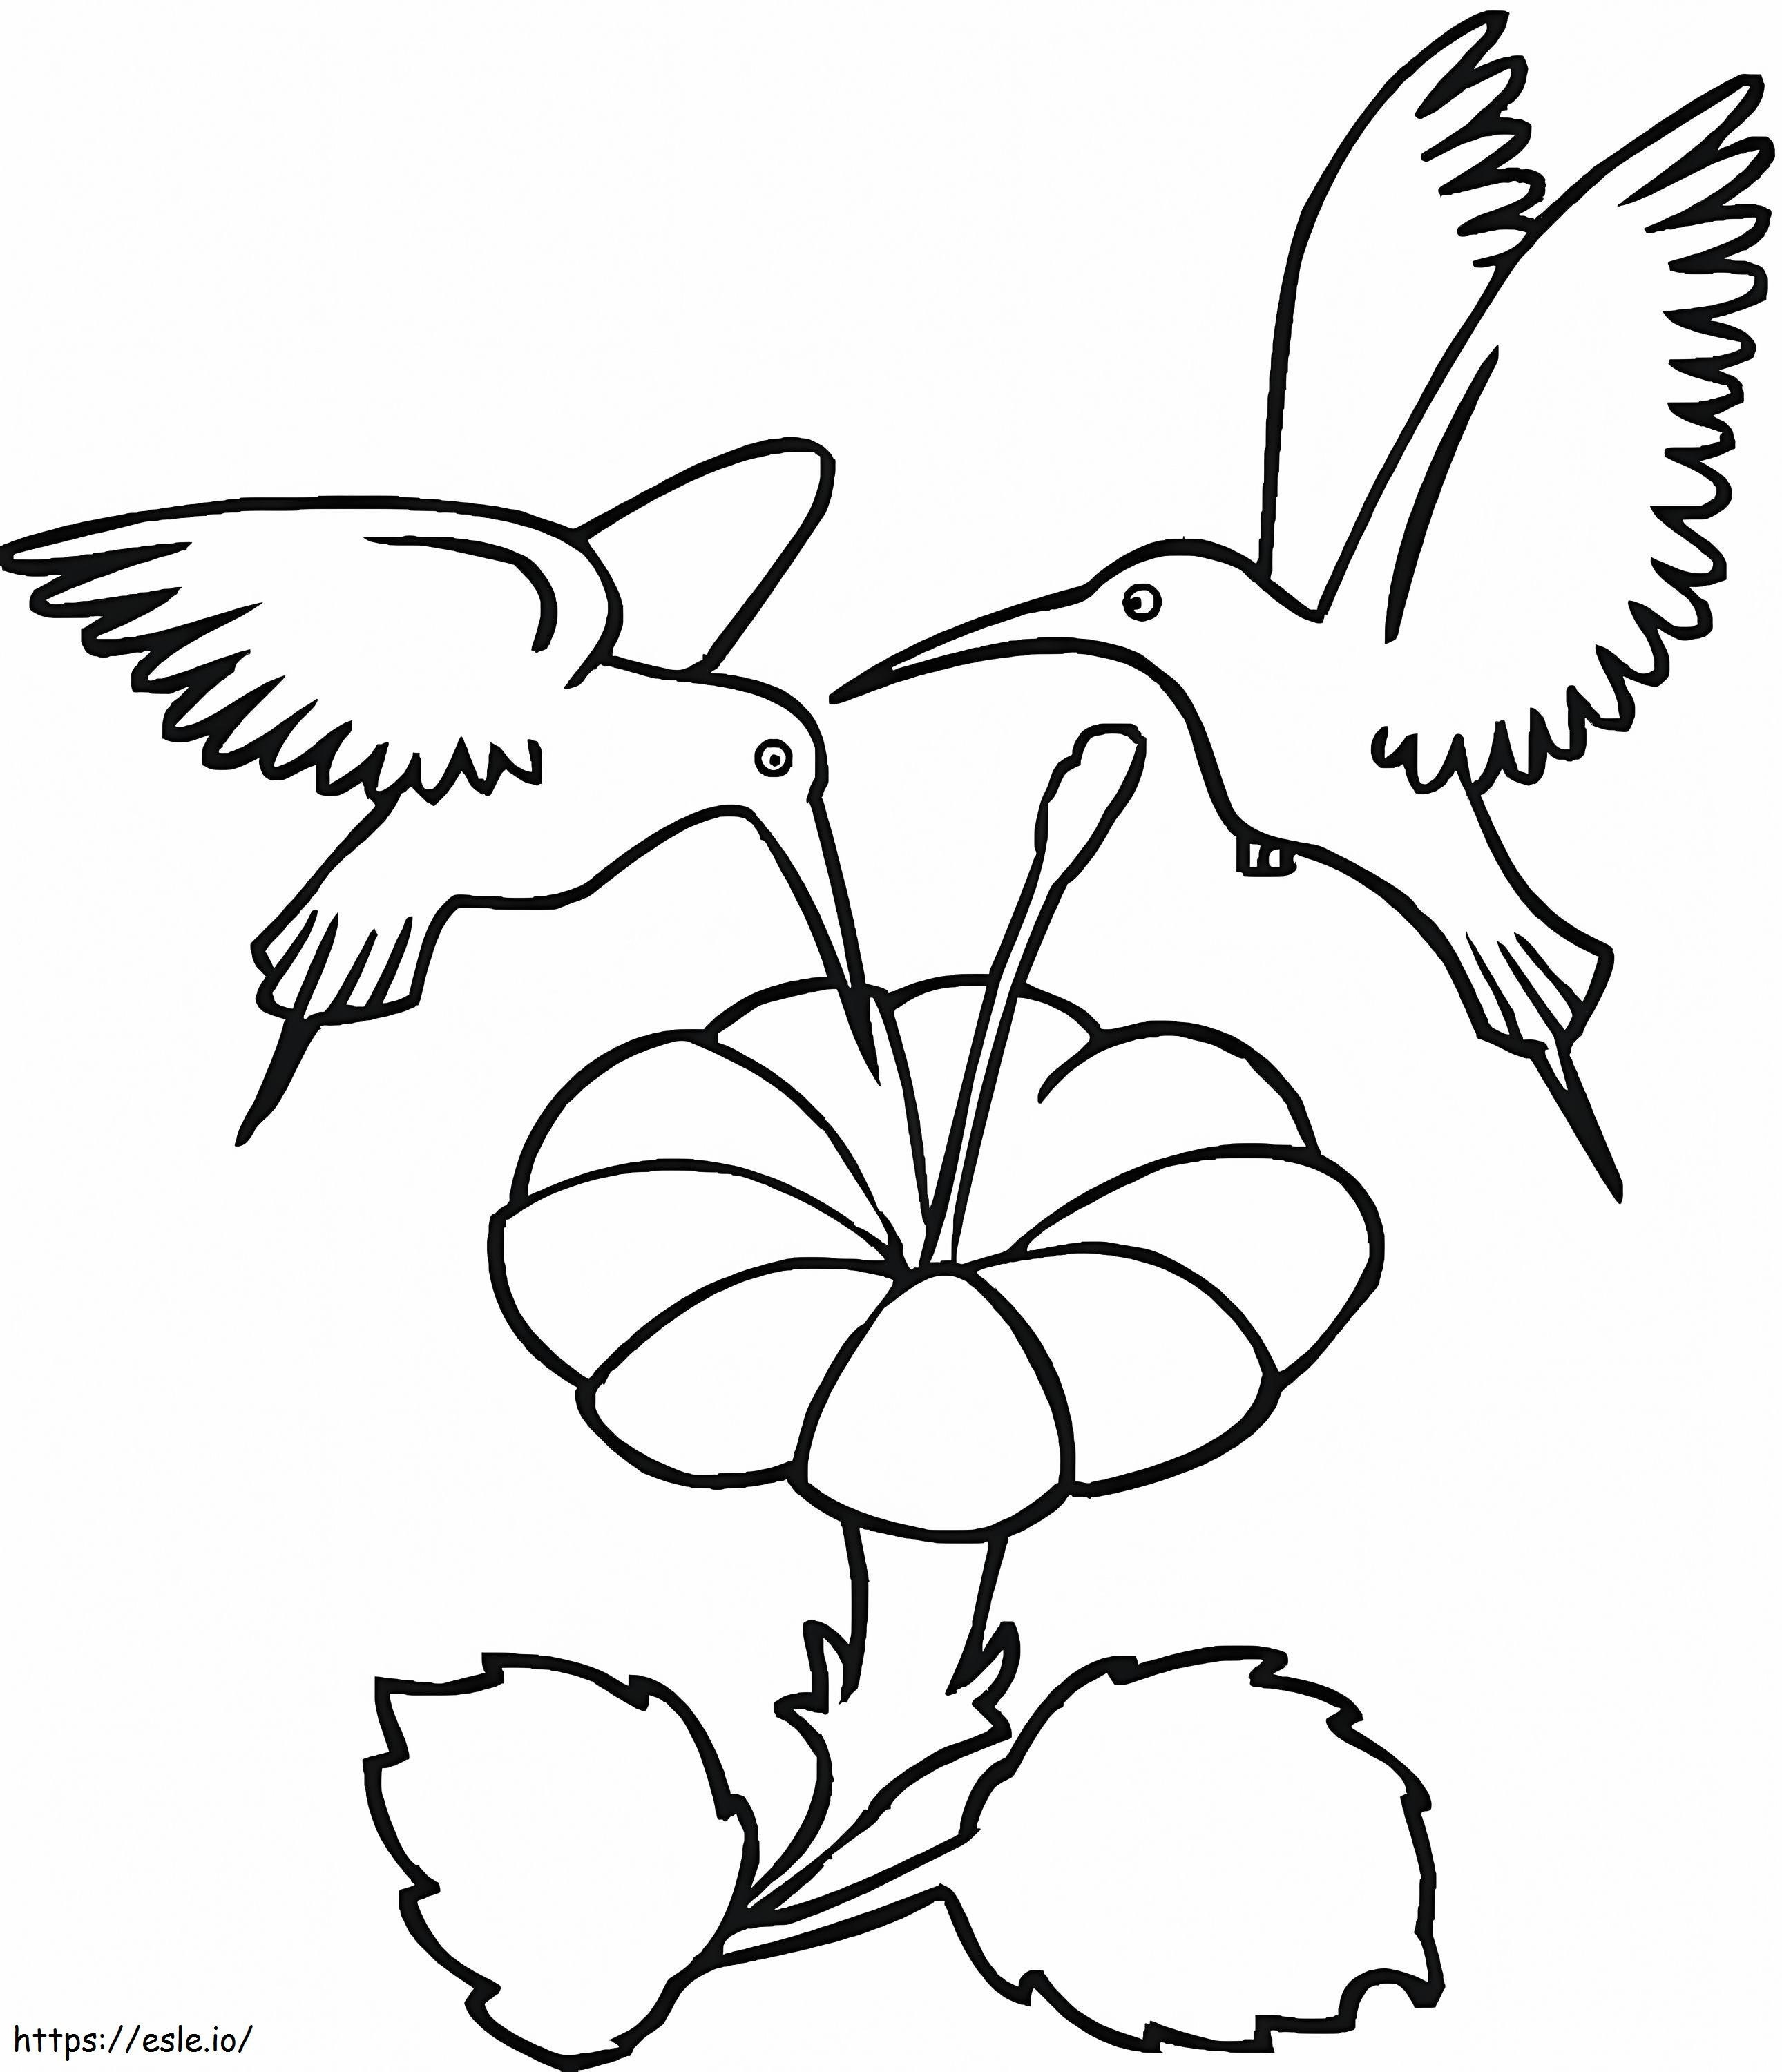 Zwei Kolibris mit Blume ausmalbilder